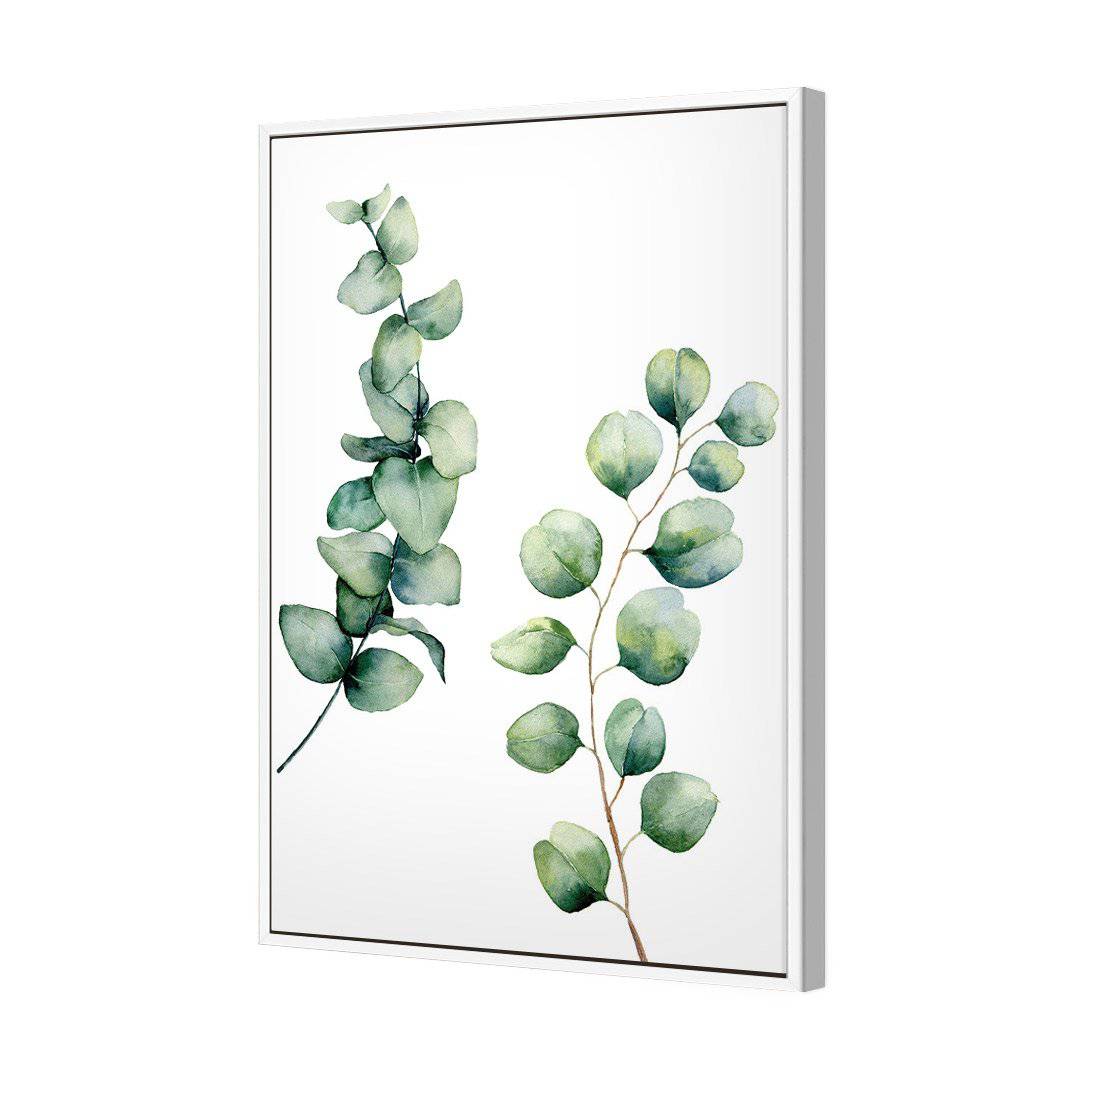 Eucalyptus Duo Canvas Art-Canvas-Wall Art Designs-45x30cm-Canvas - White Frame-Wall Art Designs